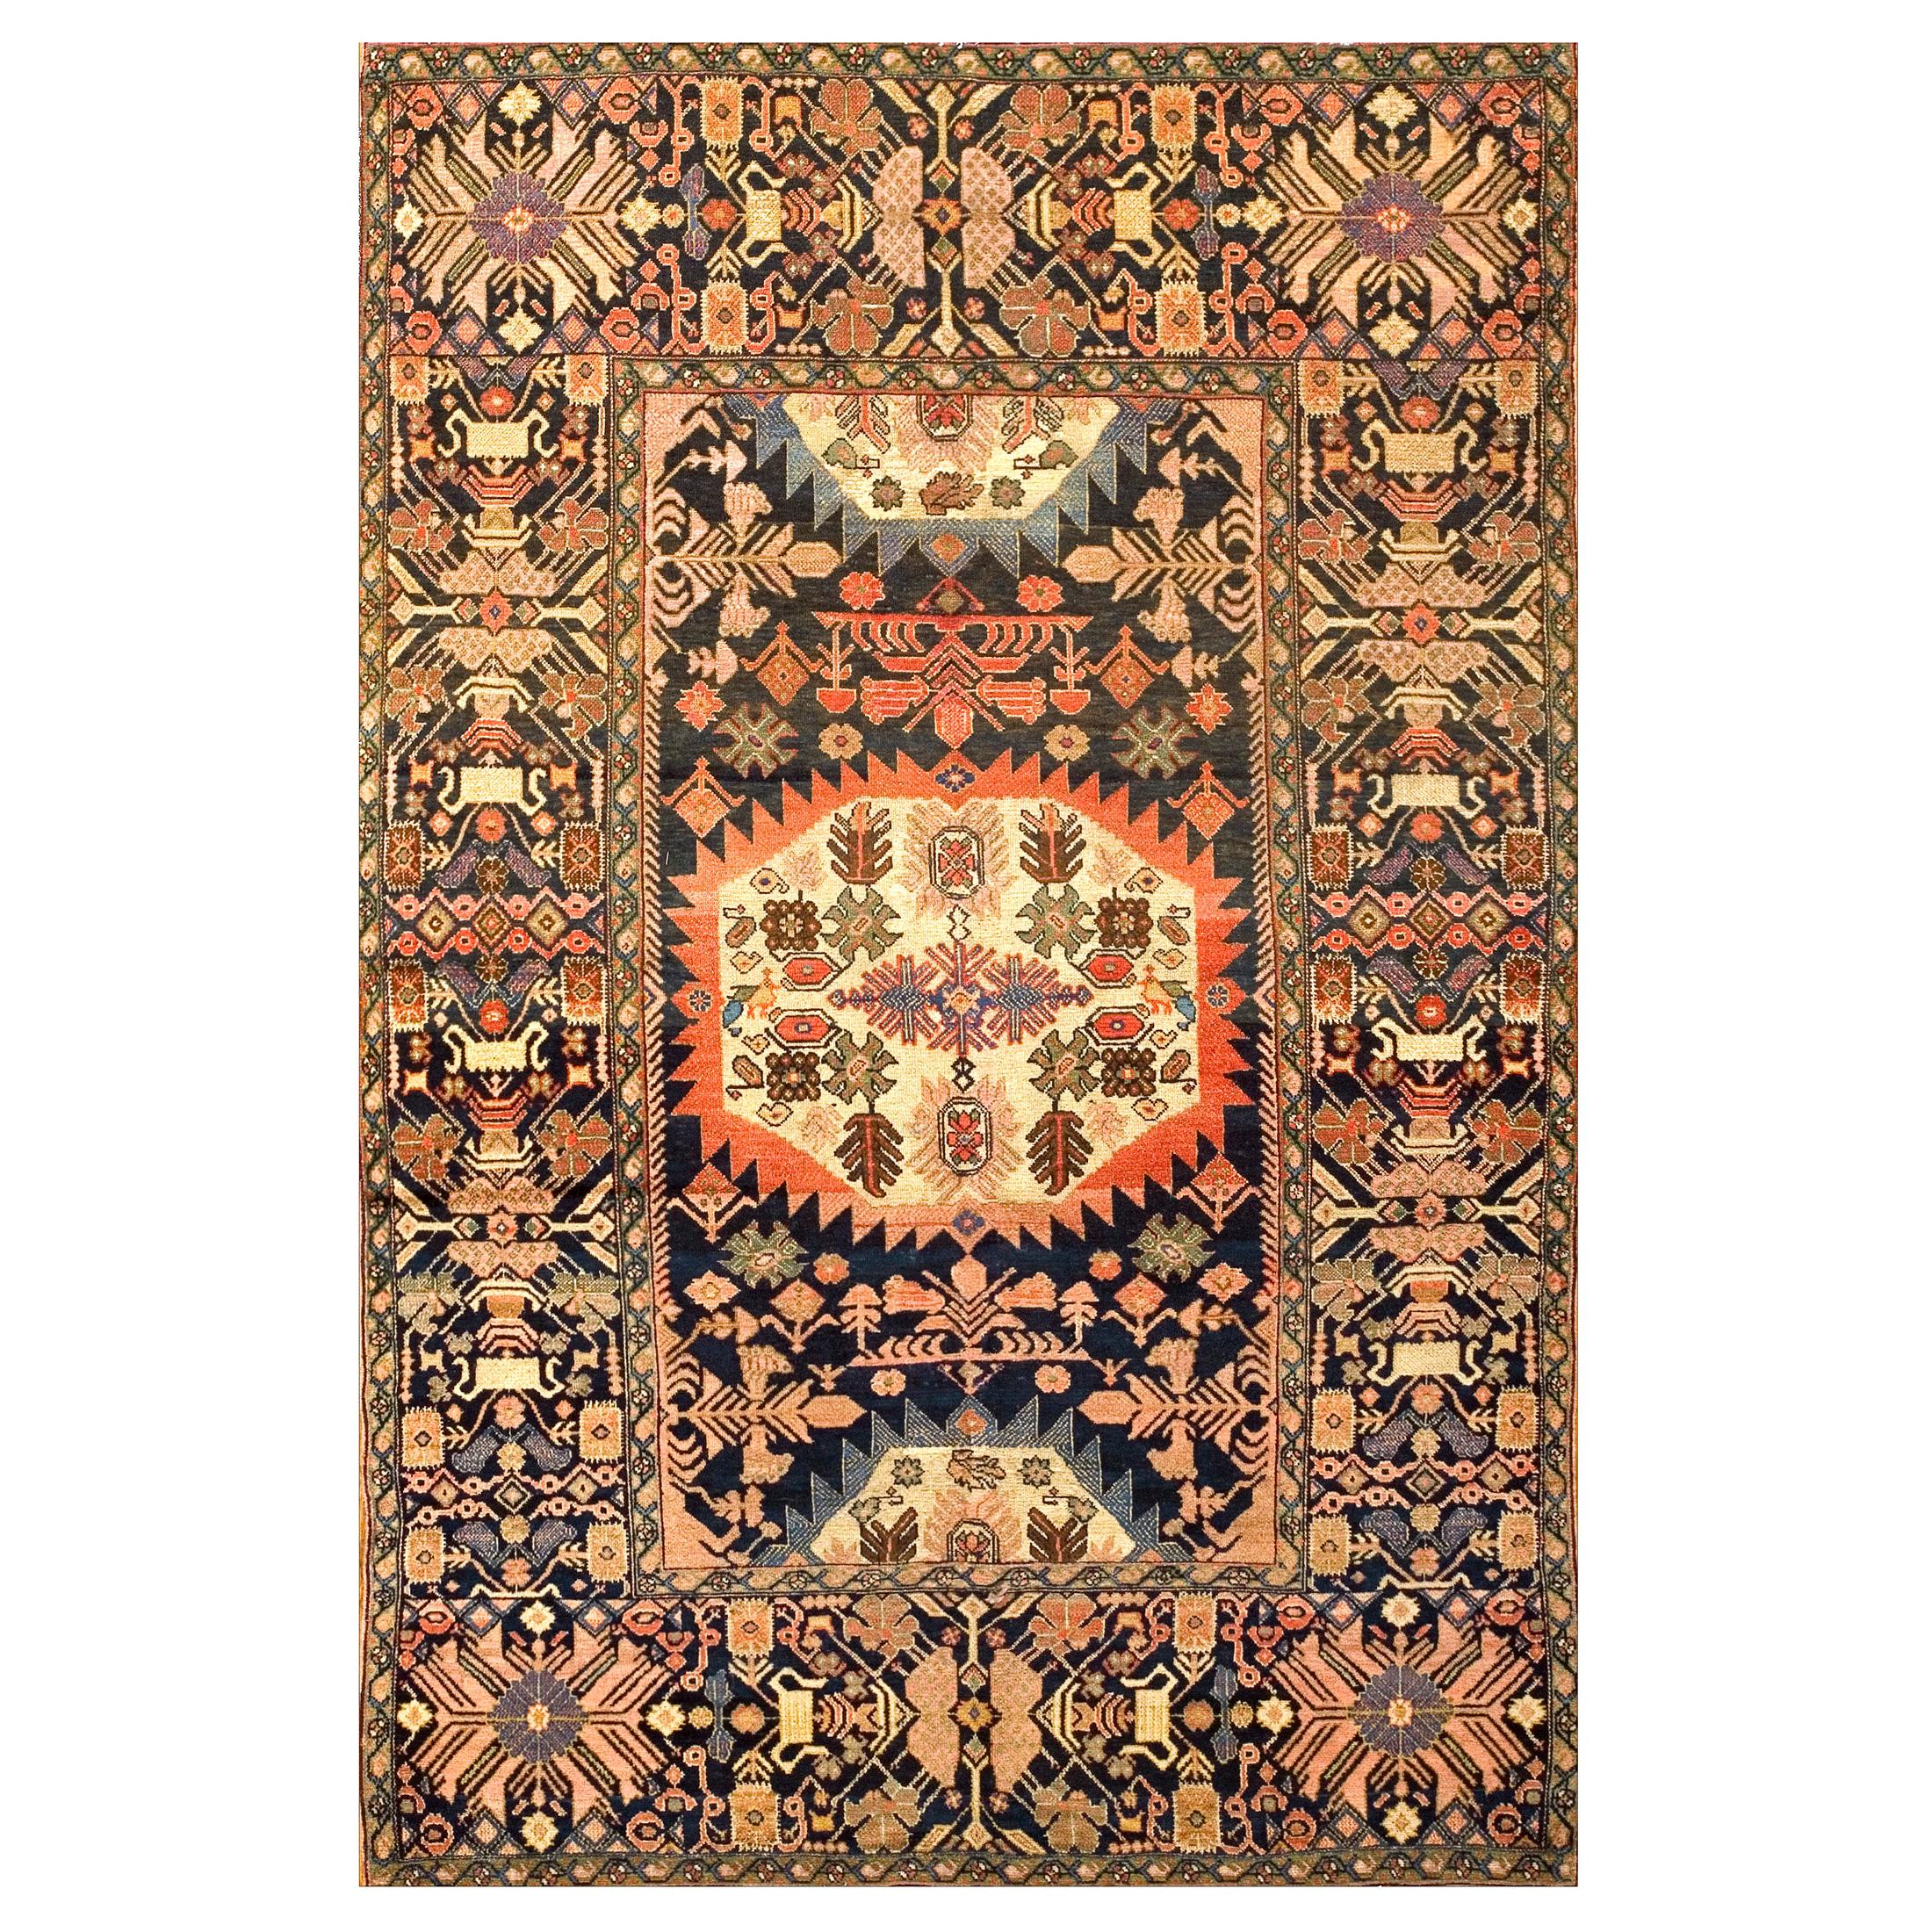 19th Century Persian Farahan Carpet ( 4'2" x 6'3" - 127 x 191 )